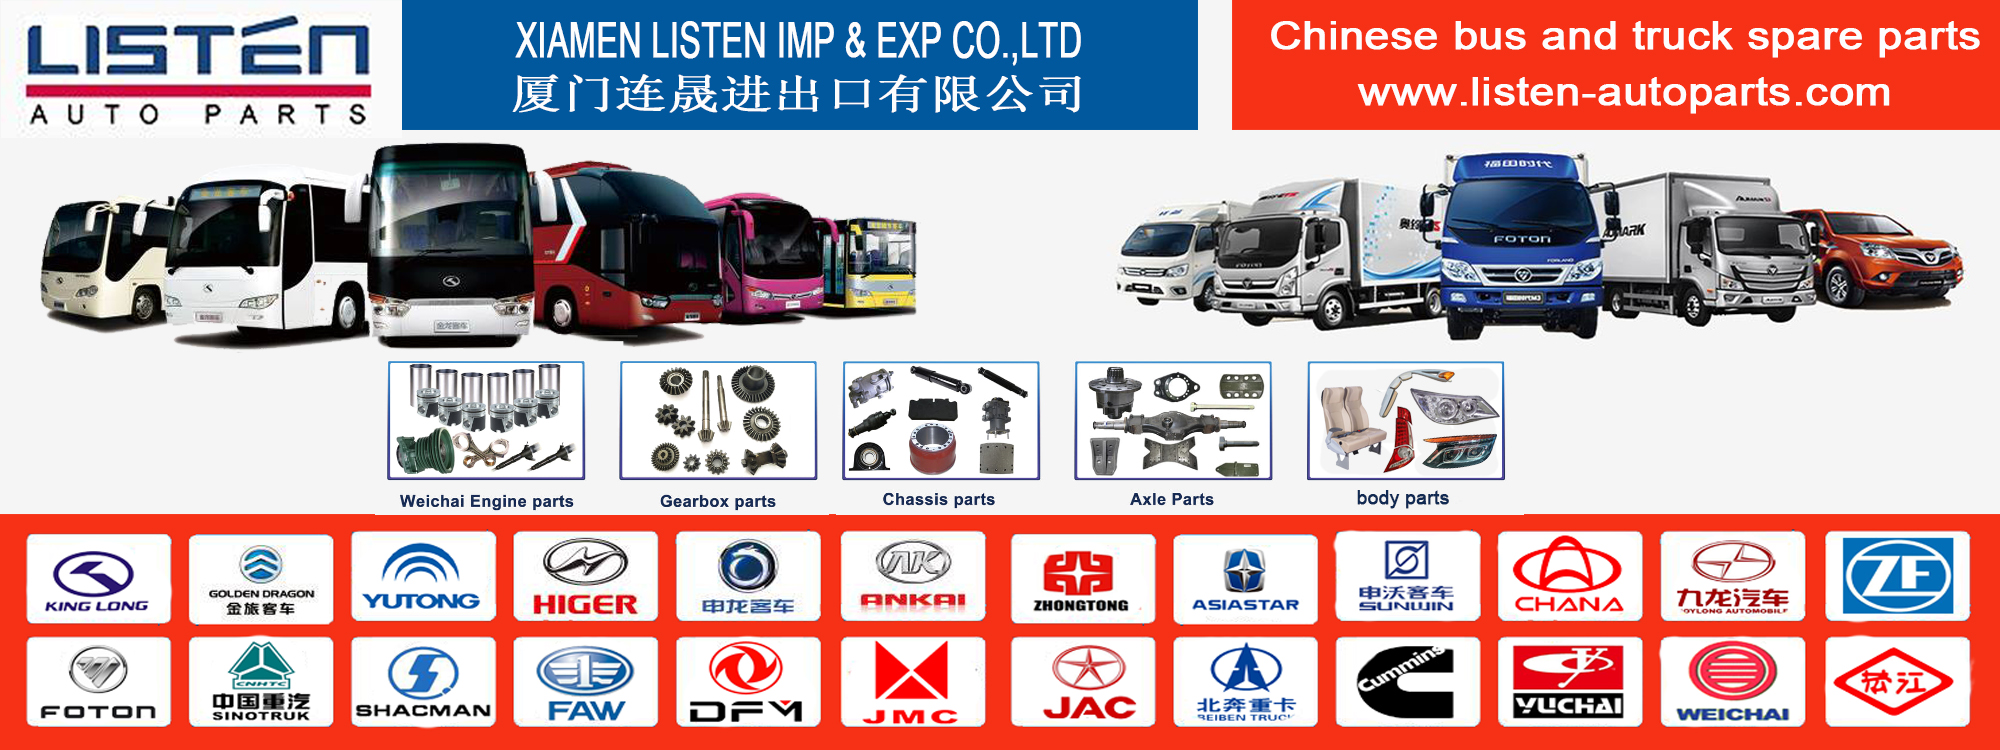 Xiamen Ouvir Imp & Exp Co., Ltd